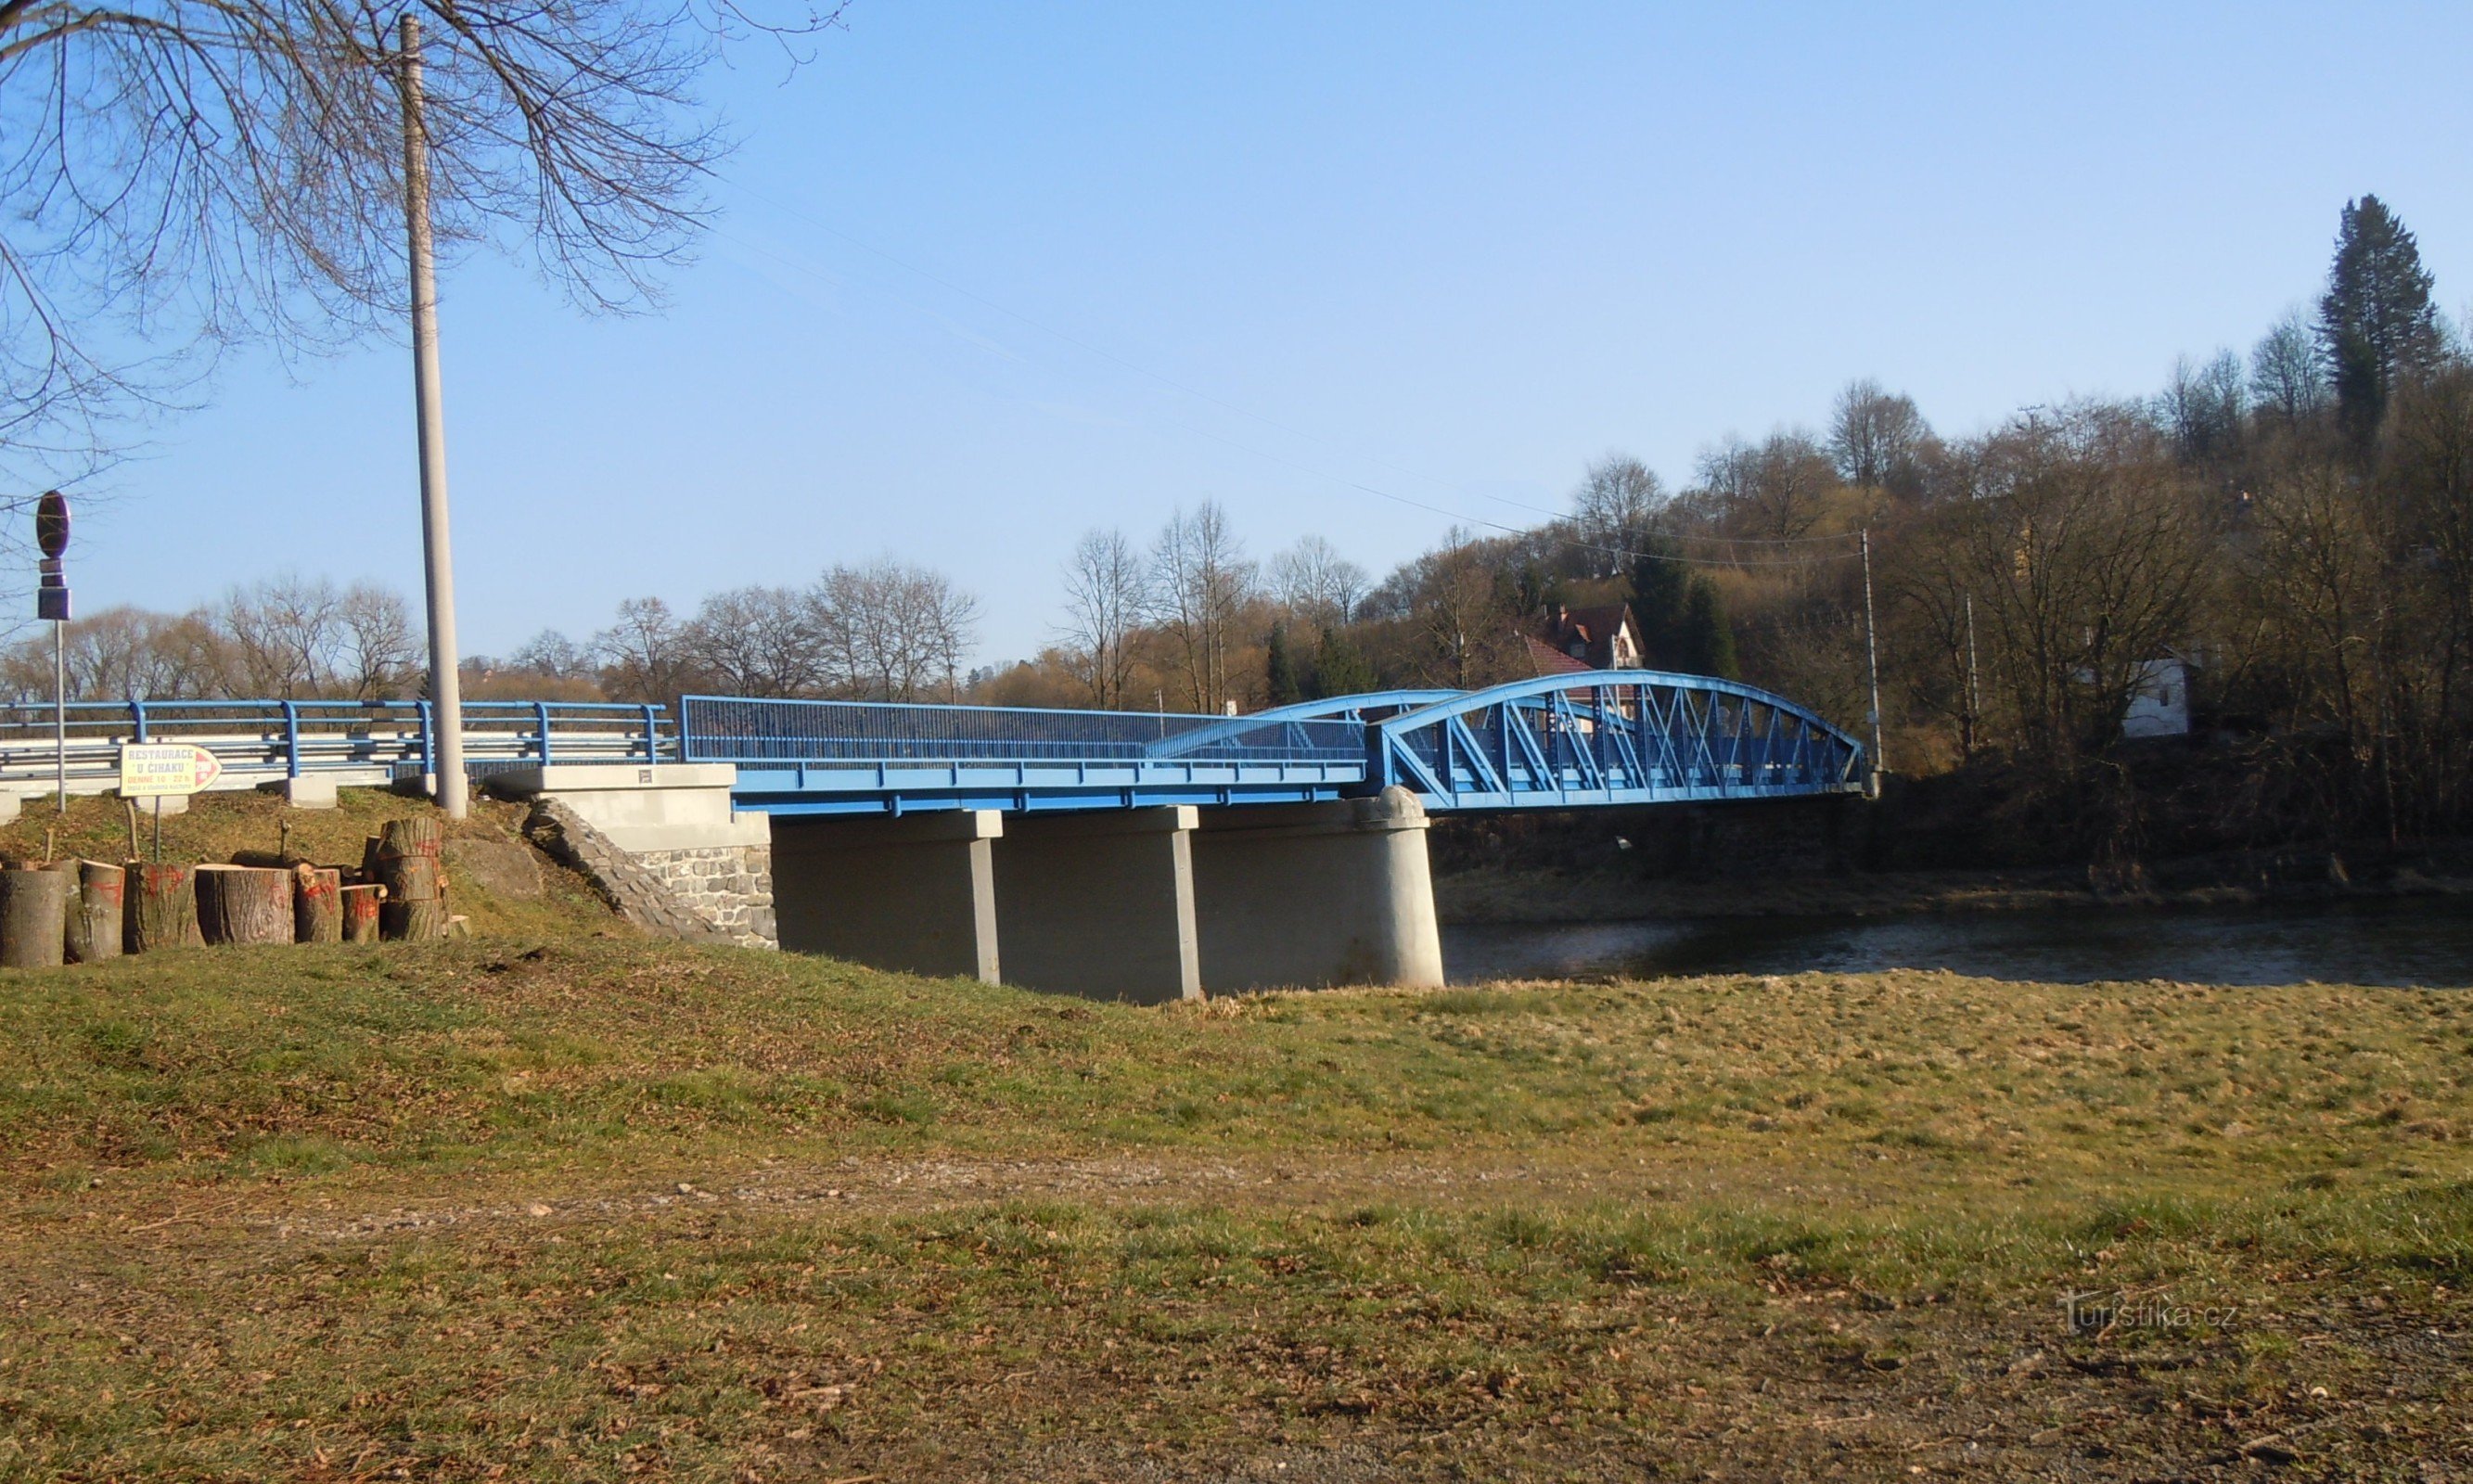 Ledečko - một cây cầu với một trại chèo thuyền